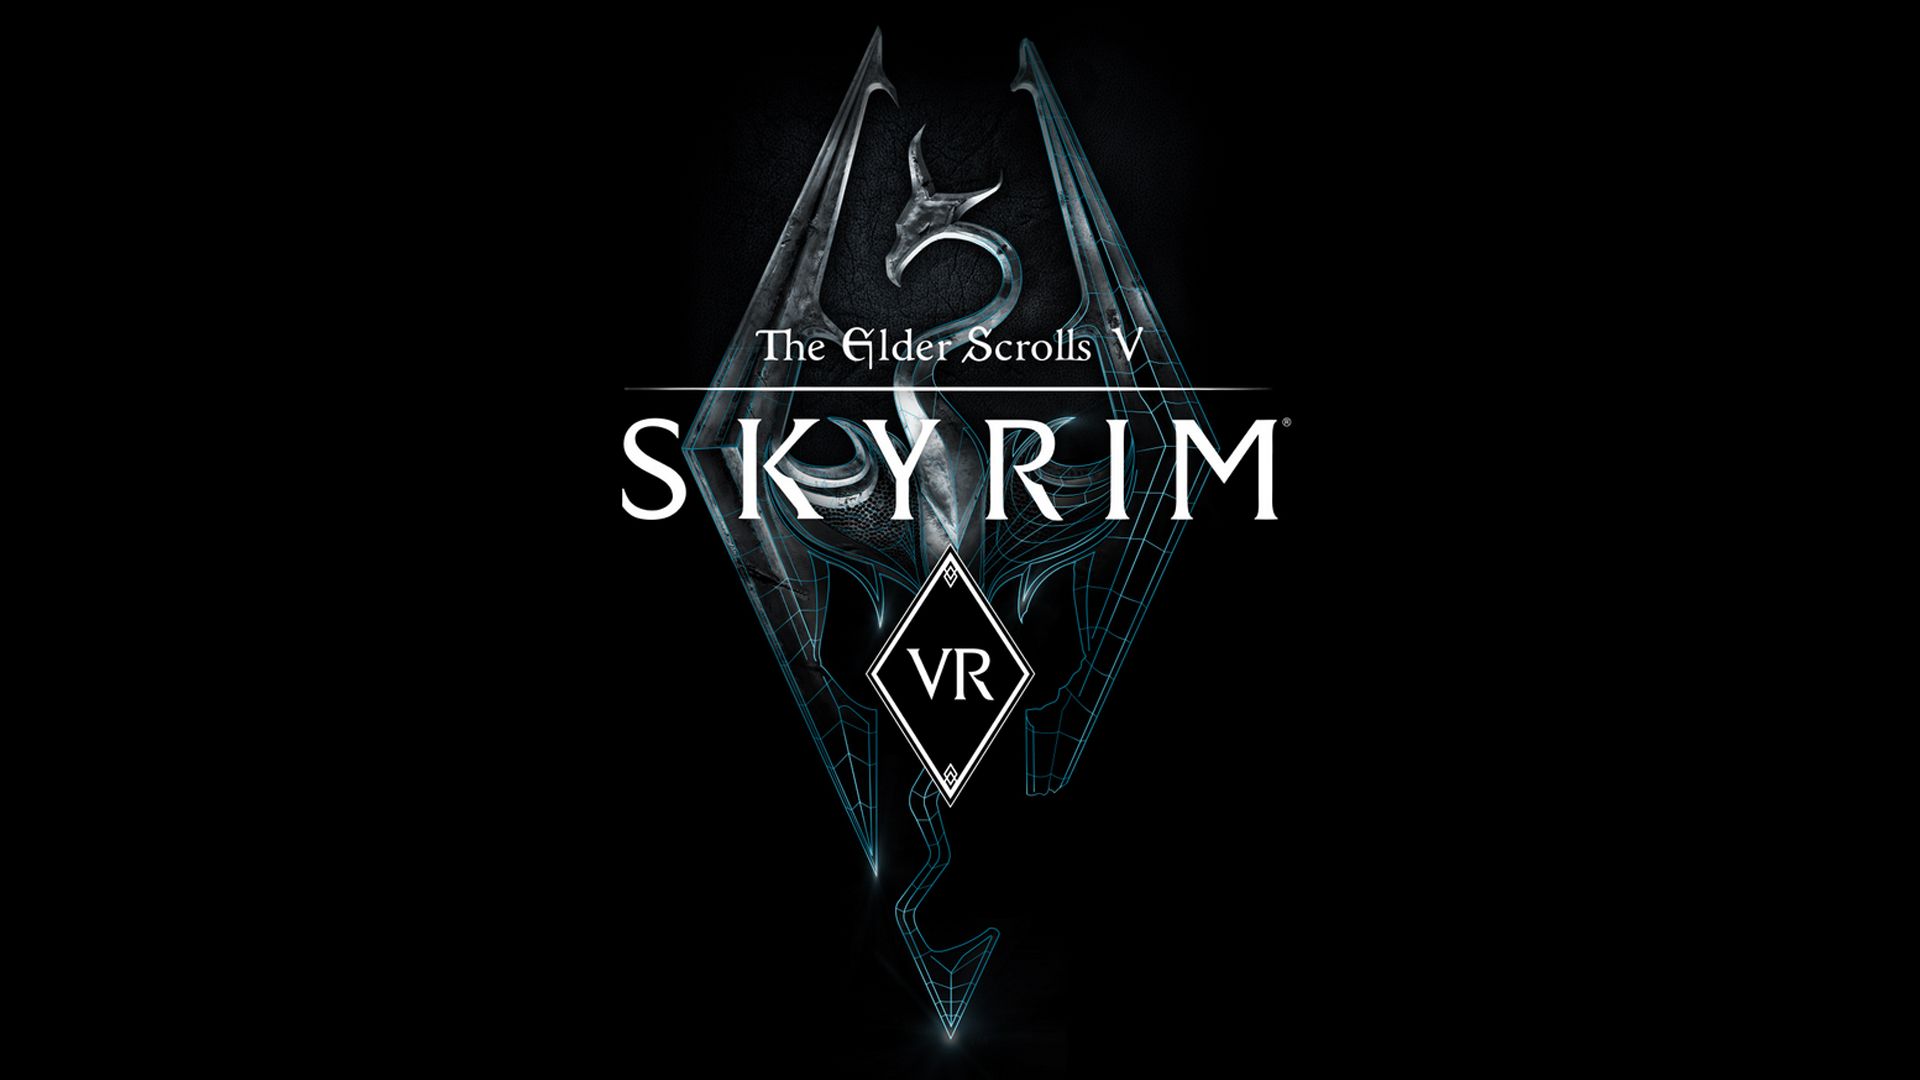 Présentation du jeu The Elder Scrolls V: Skyrim VR